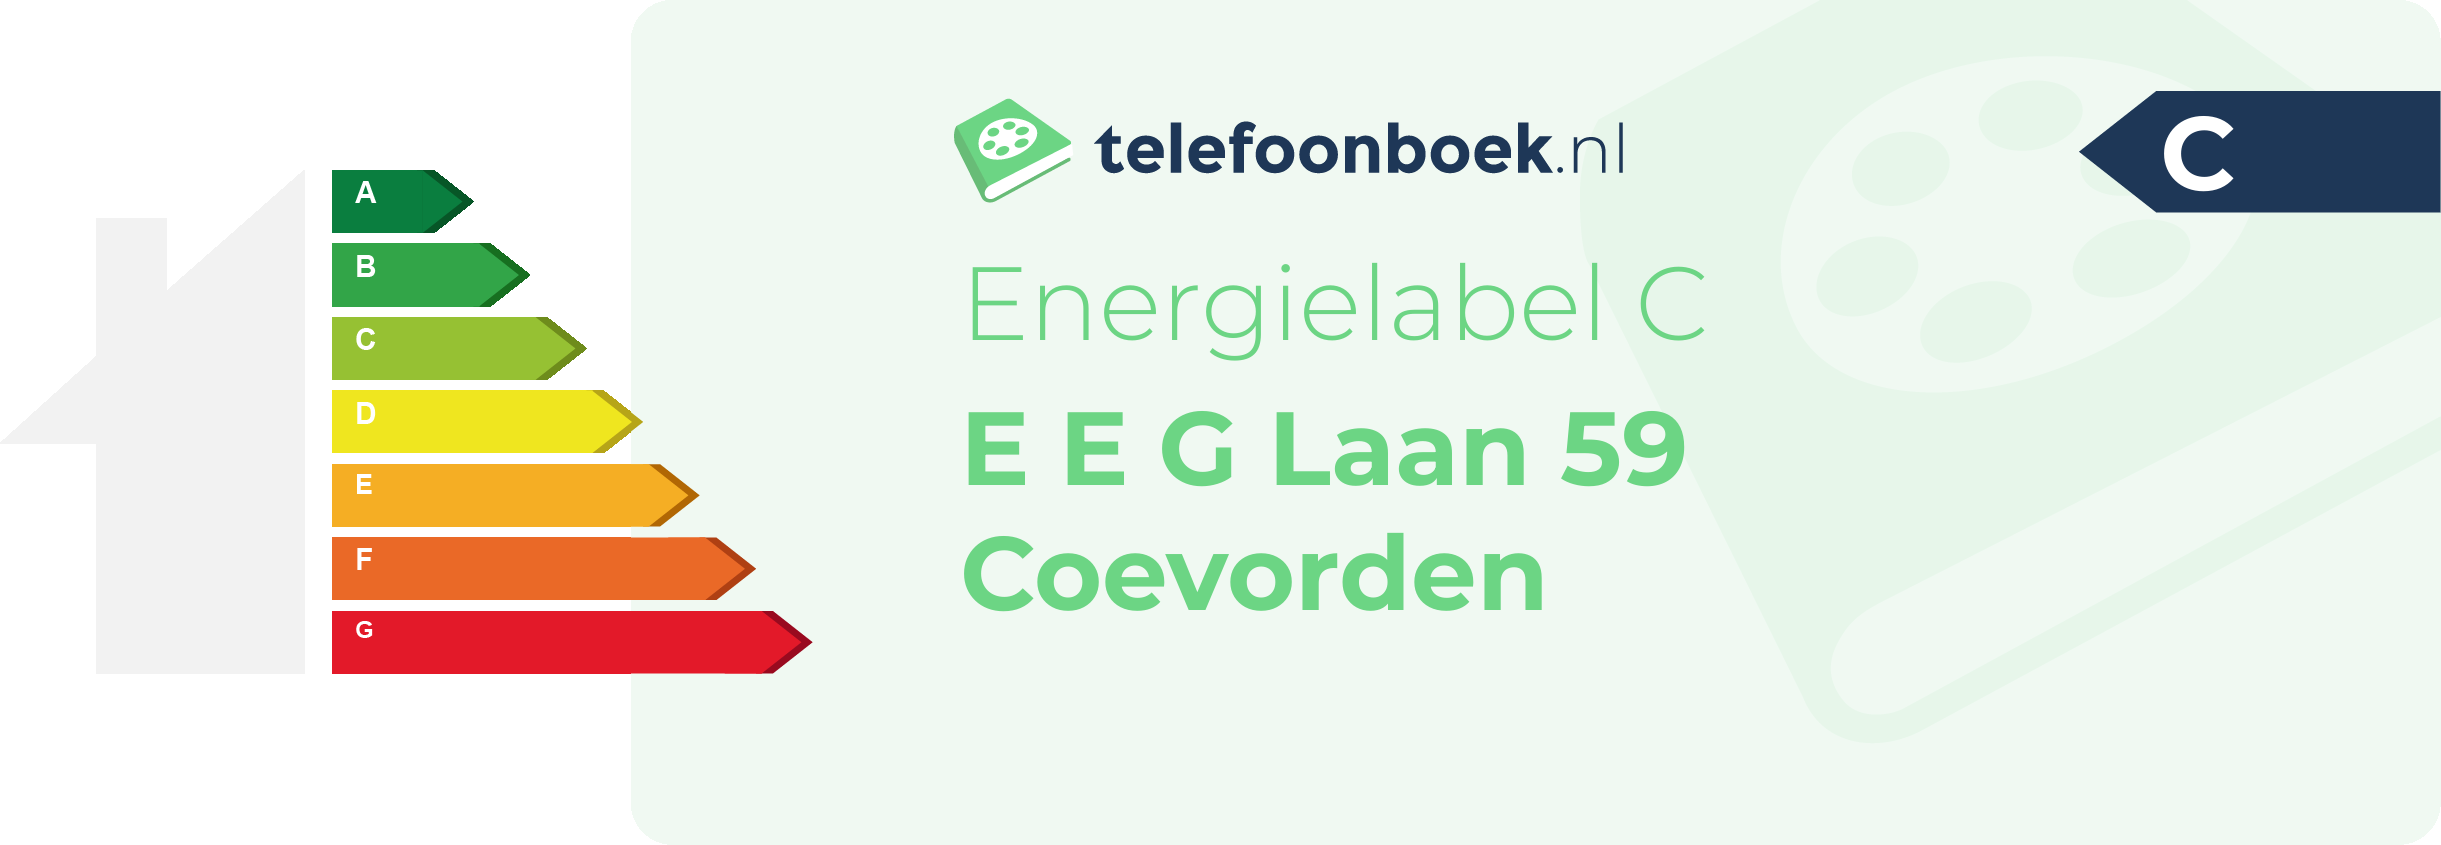 Energielabel E E G Laan 59 Coevorden